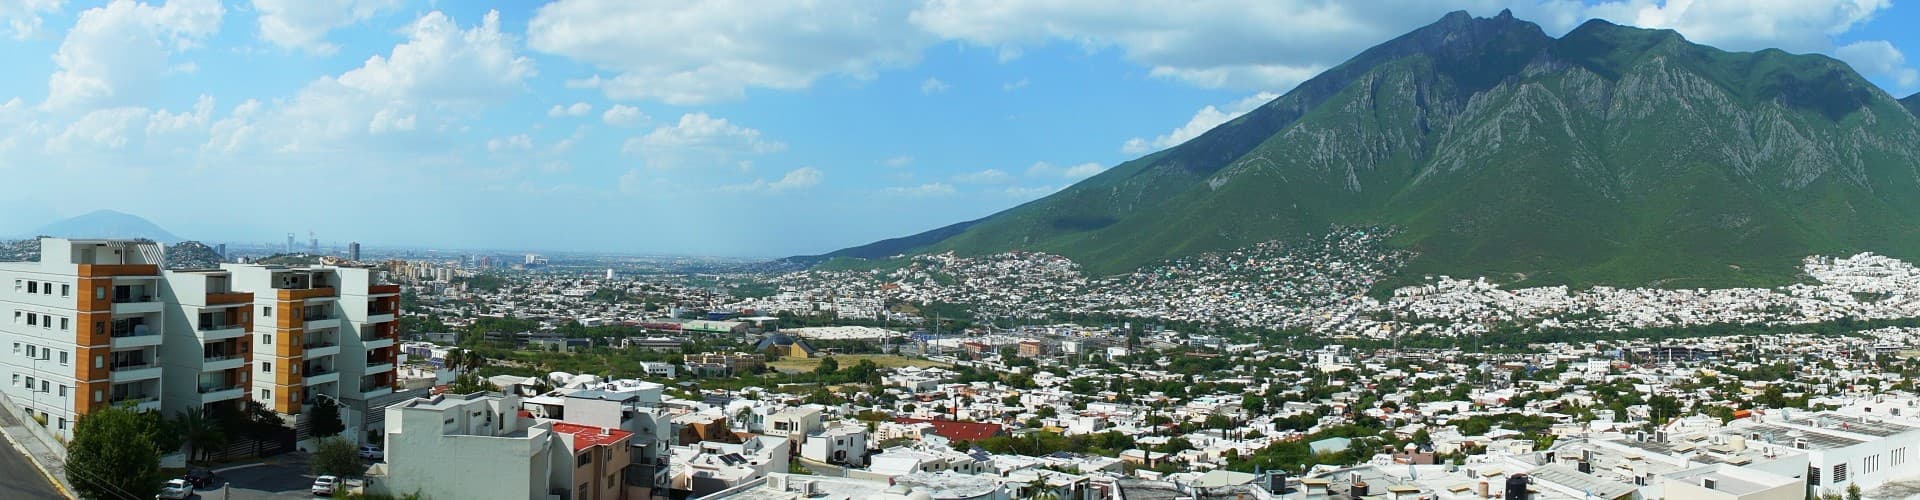 Monterrey Skyline